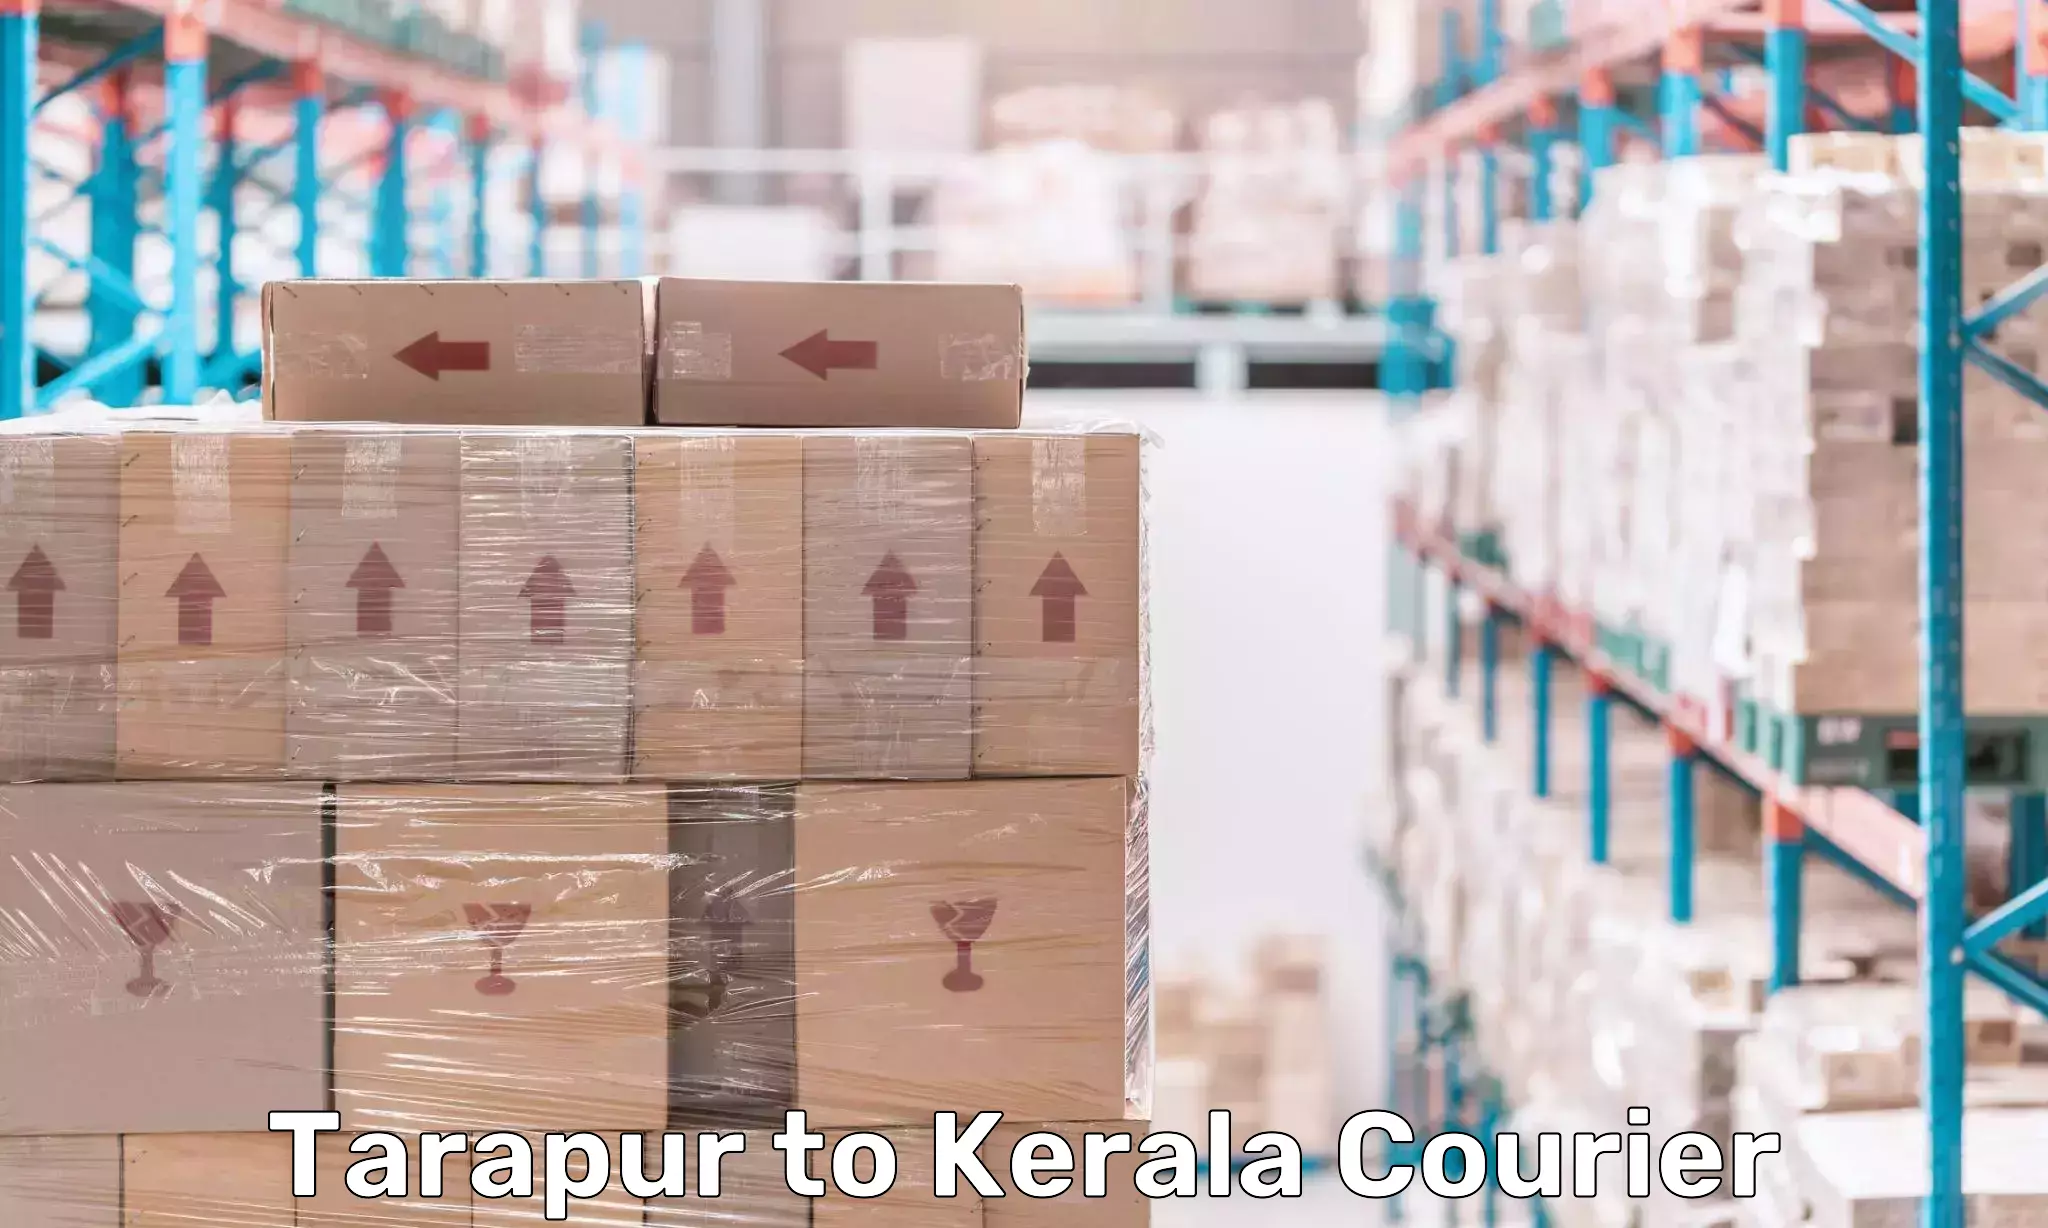 Customer-centric shipping Tarapur to Kochi